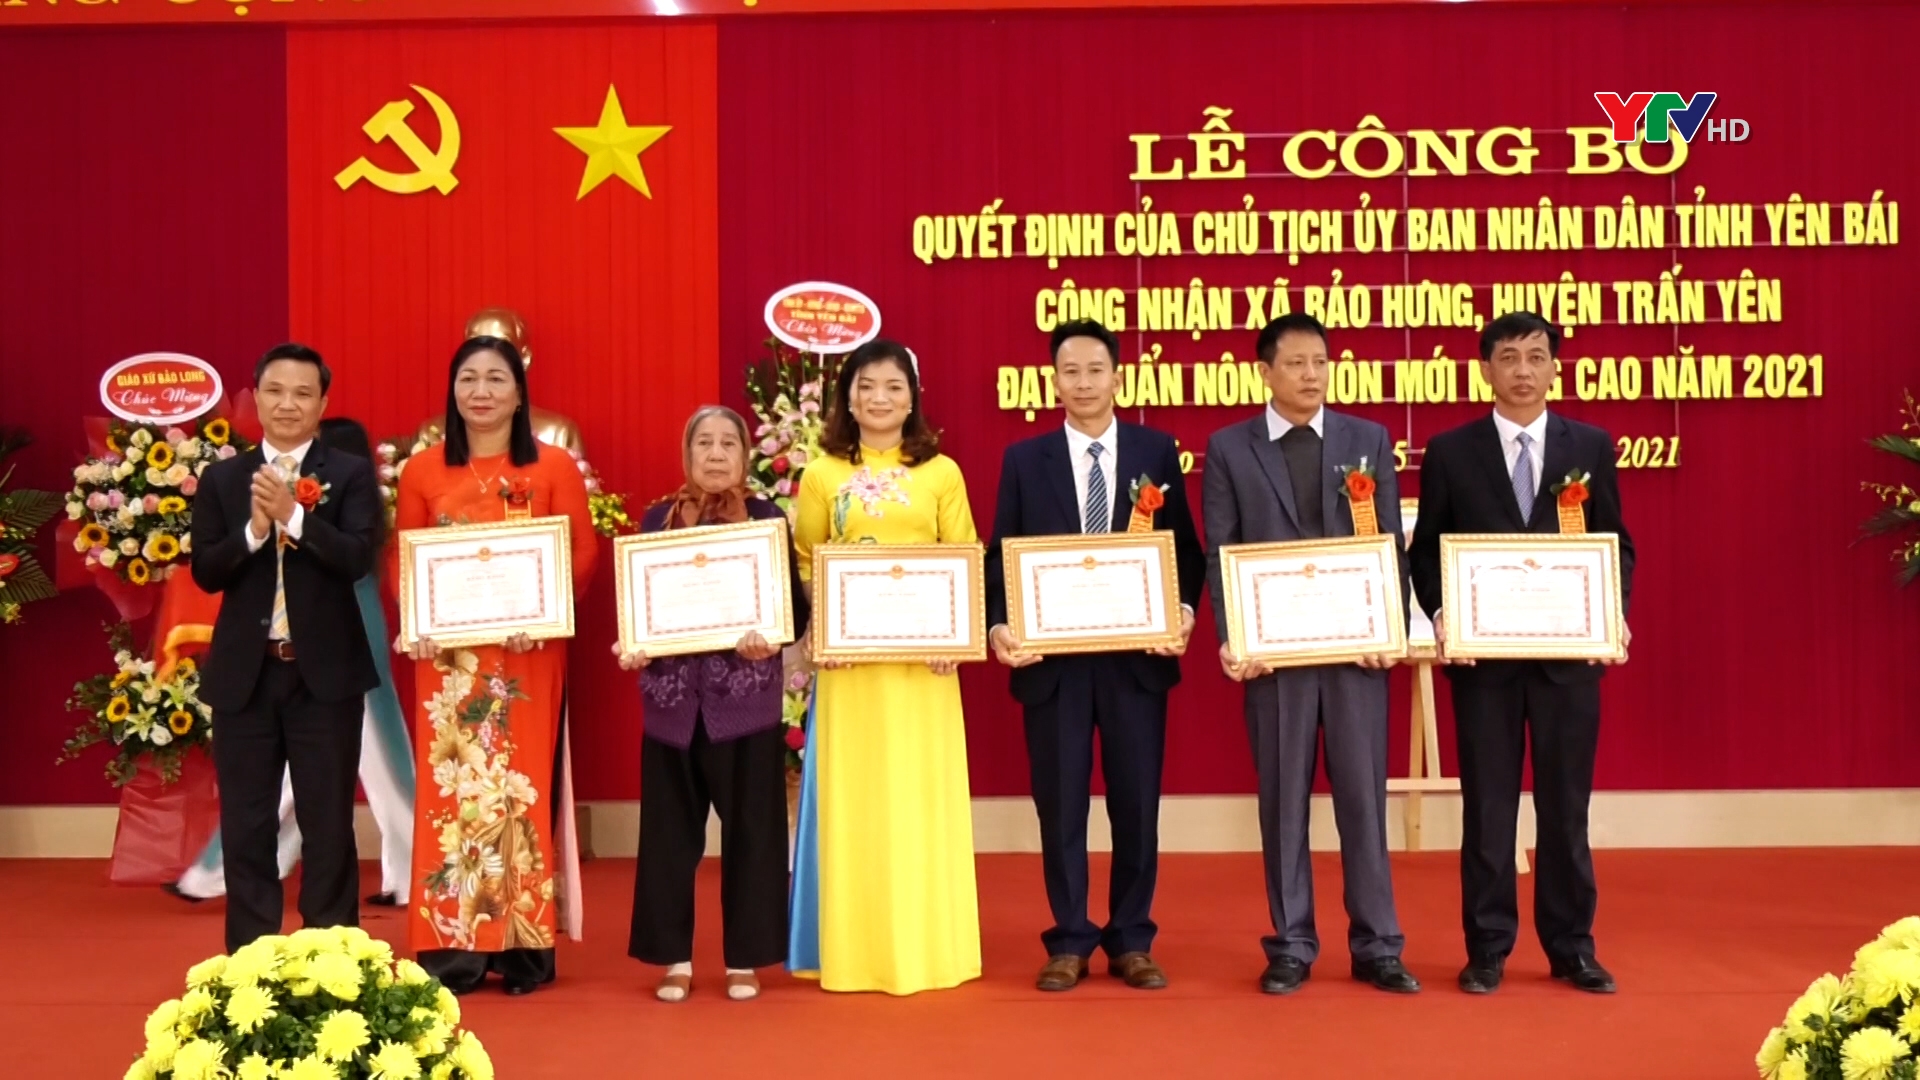 Xã Bảo Hưng, huyện Trấn Yên đạt chuẩn nông thôn mới nâng cao